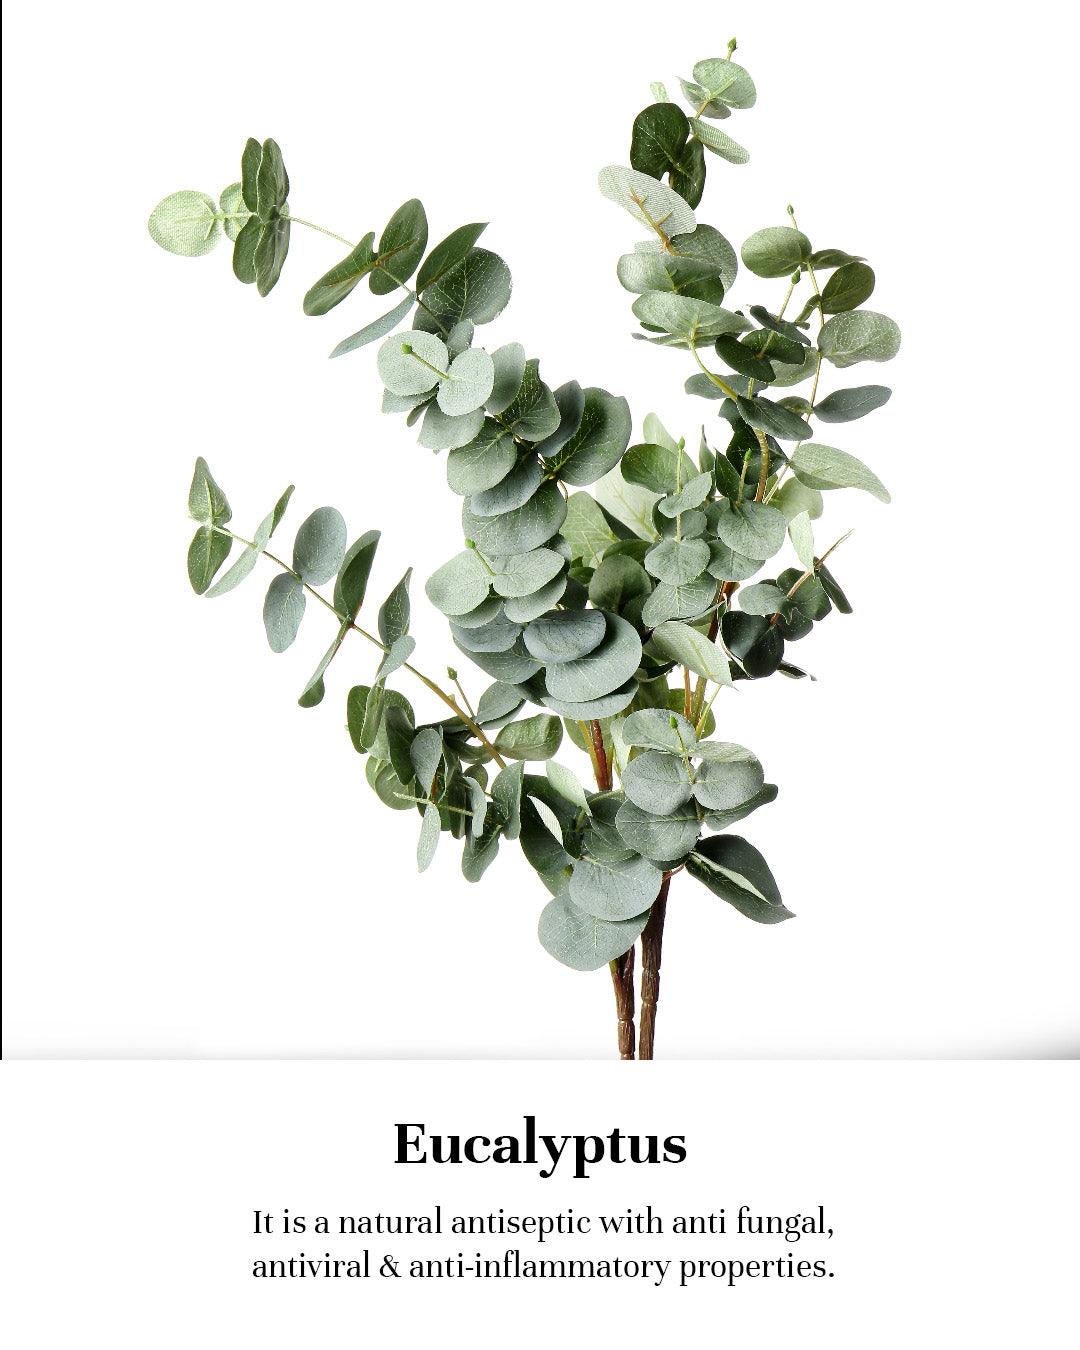 Eucalyptus_7e6c5d09-c638-412d-a951-c55d16fee52b.jpg